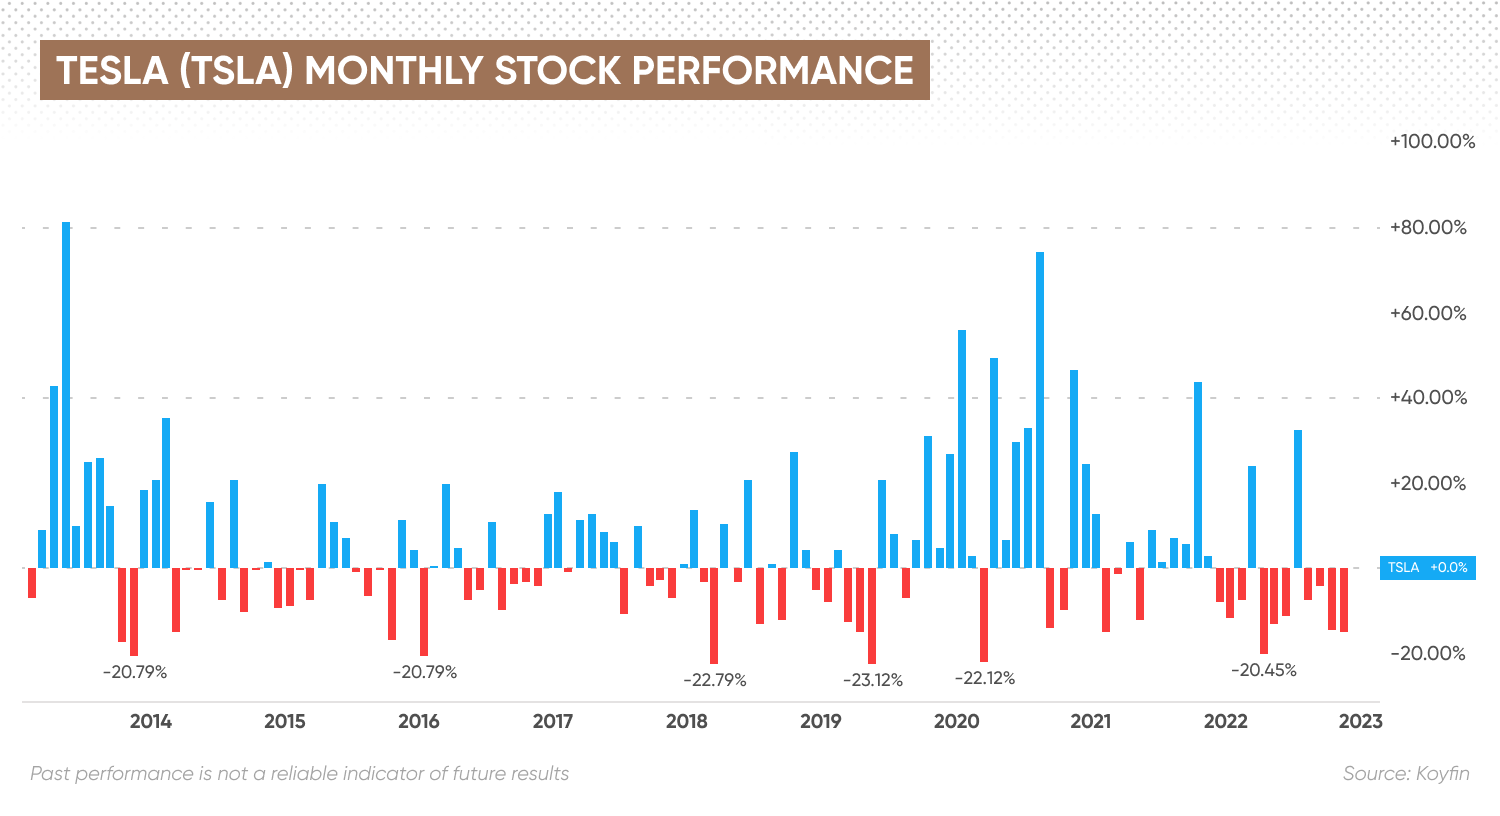 Tesla (TSLA) monthly stock performance